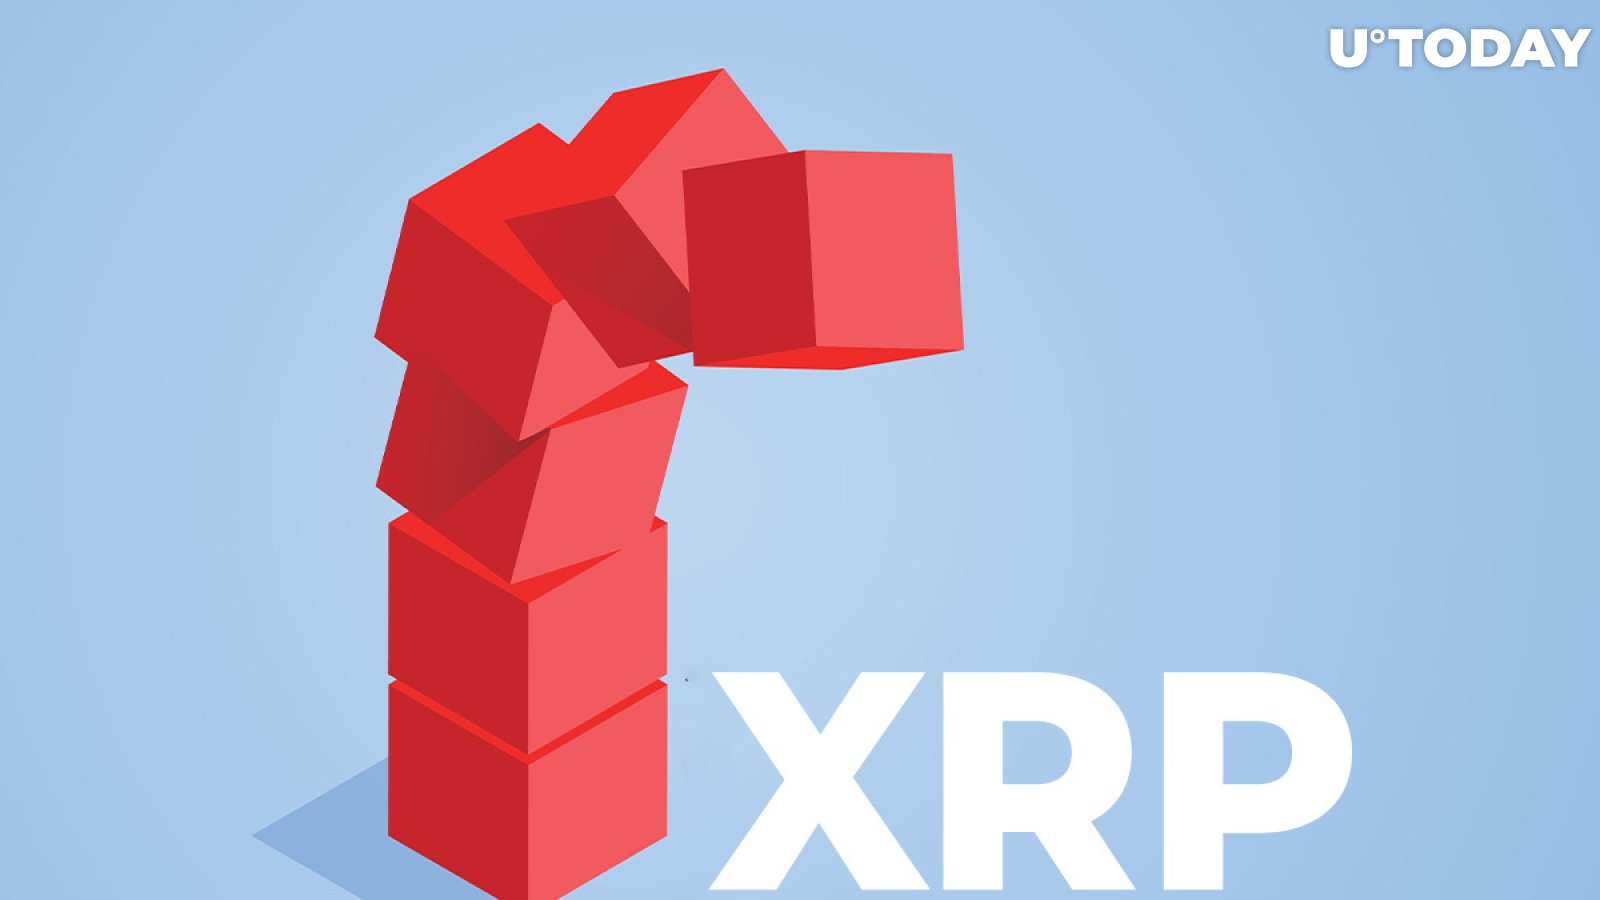 XRP Turns Negative After Massive Crash